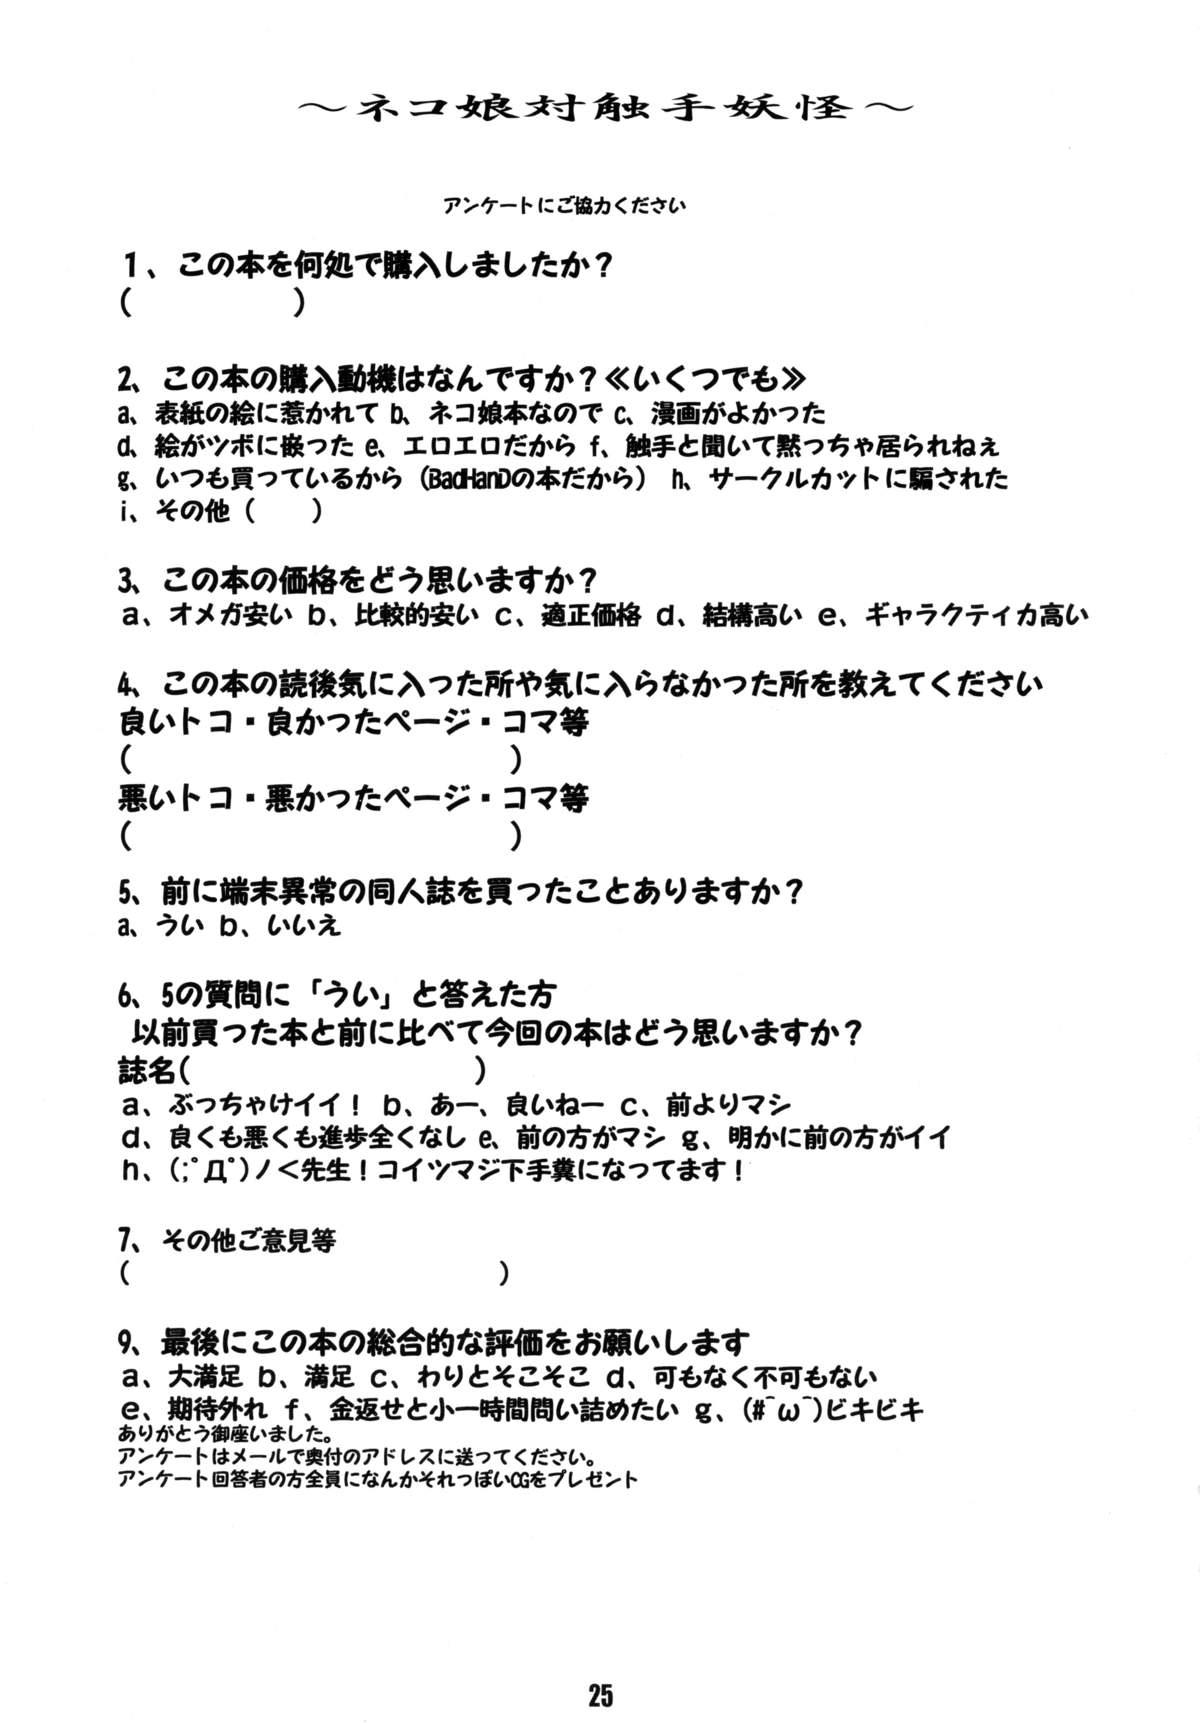 Str8 Neko Musume Tai Shokushu Youkai - Gegege no kitarou Shecock - Page 25